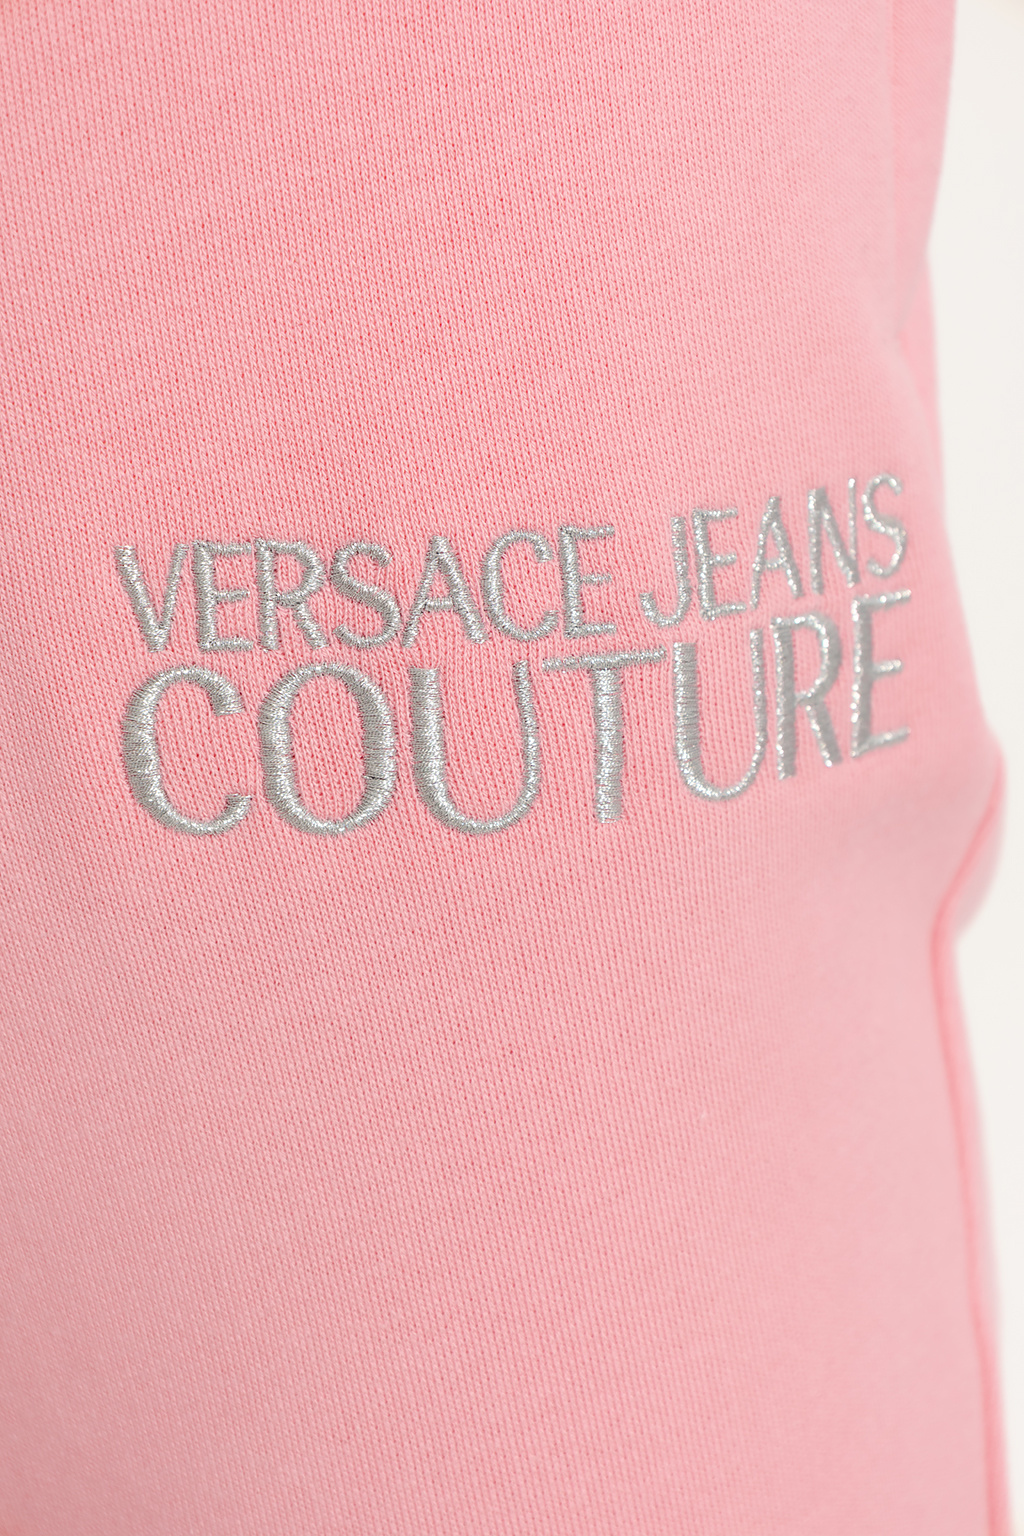 Versace Jeans Couture maison article mast 08 maison article hybrid mens shorts white black